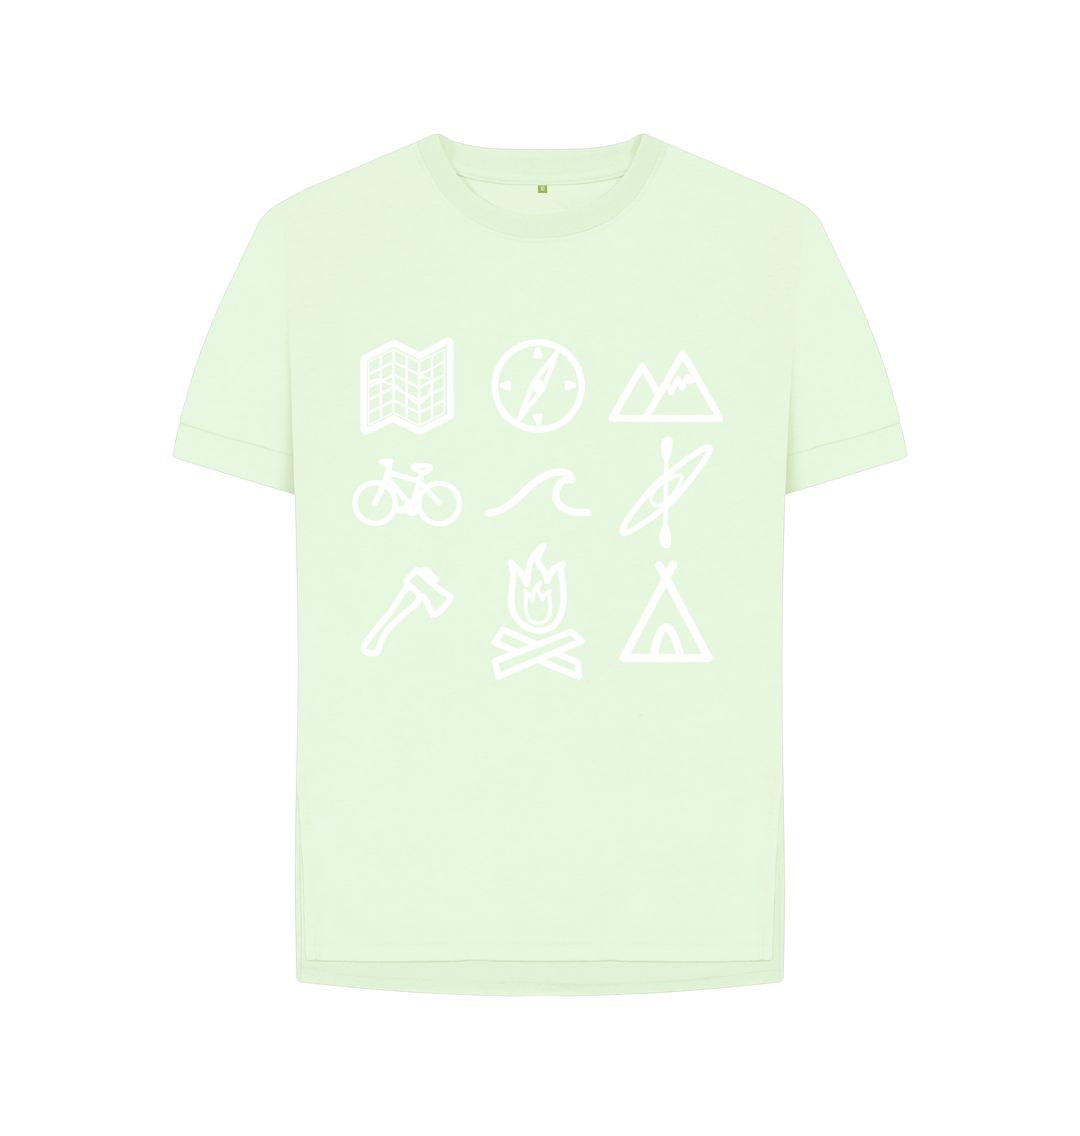 Pastel Green P1AN Outdoor Activity Womens T-shirt